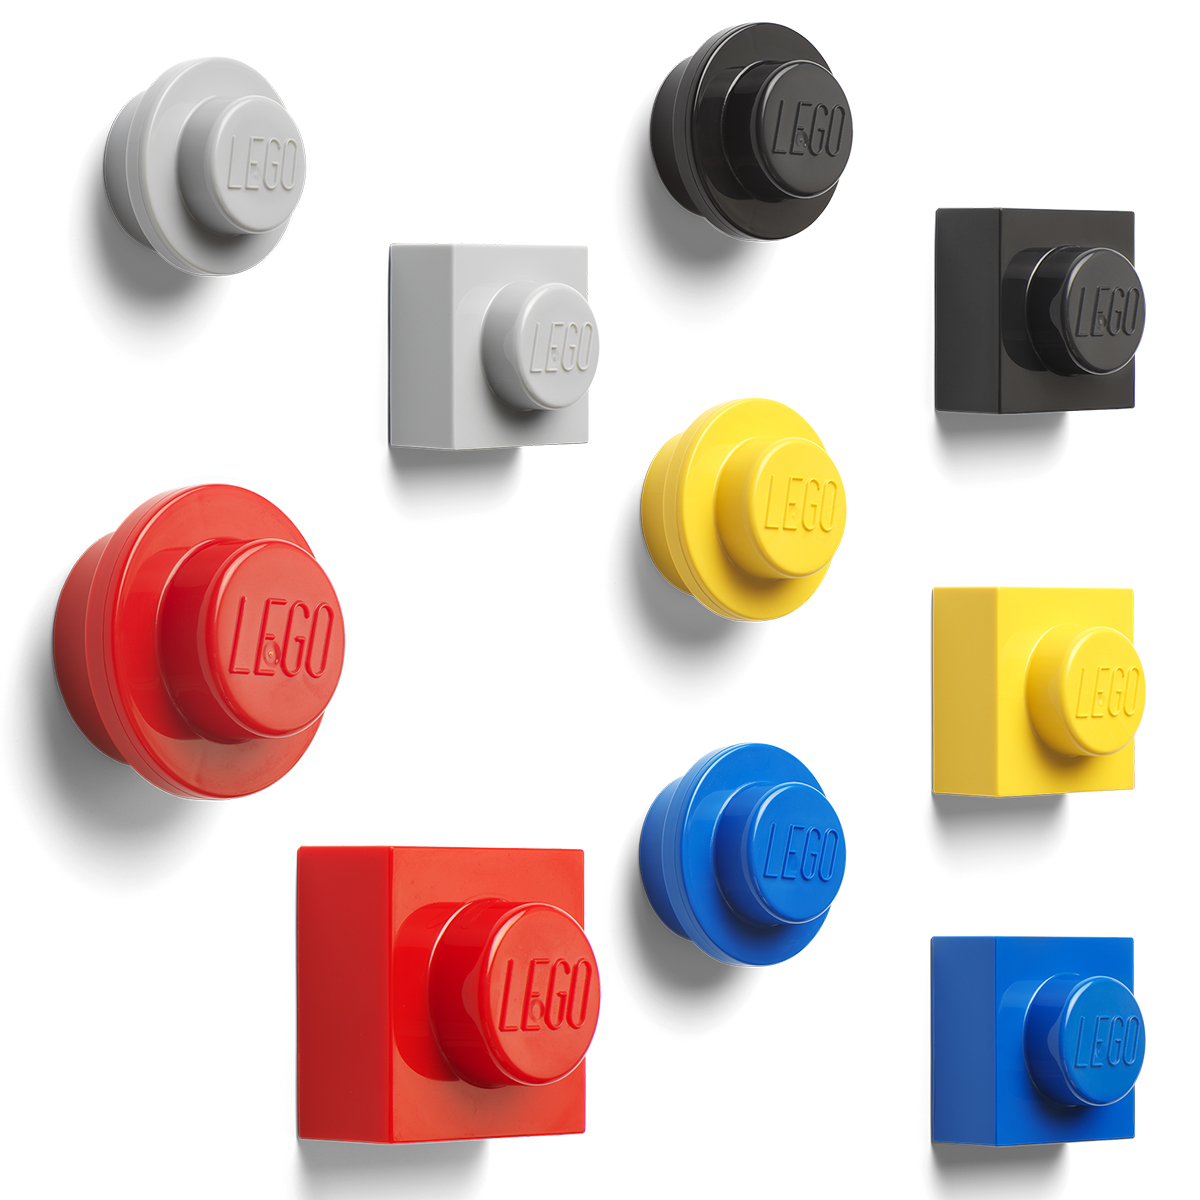 Dekorativní barevné magnetky ve tvartu LEGO kostek jsou skvělým doplňkem nejen do dětského pokoje, ale i do kanceláře. 